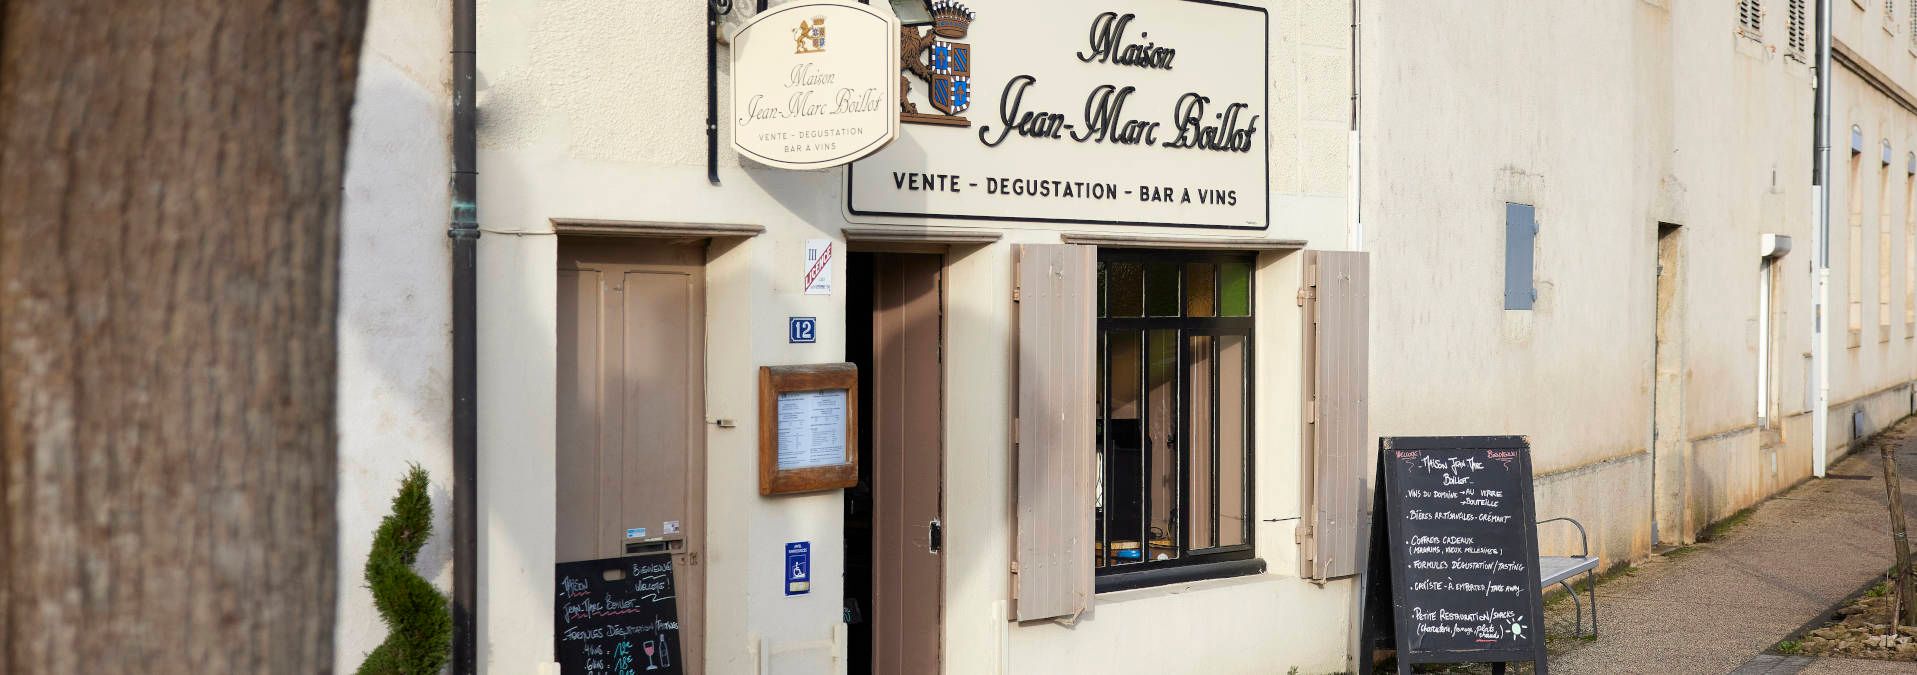 Maison Jean-Marc Boillot - Rue des vignerons